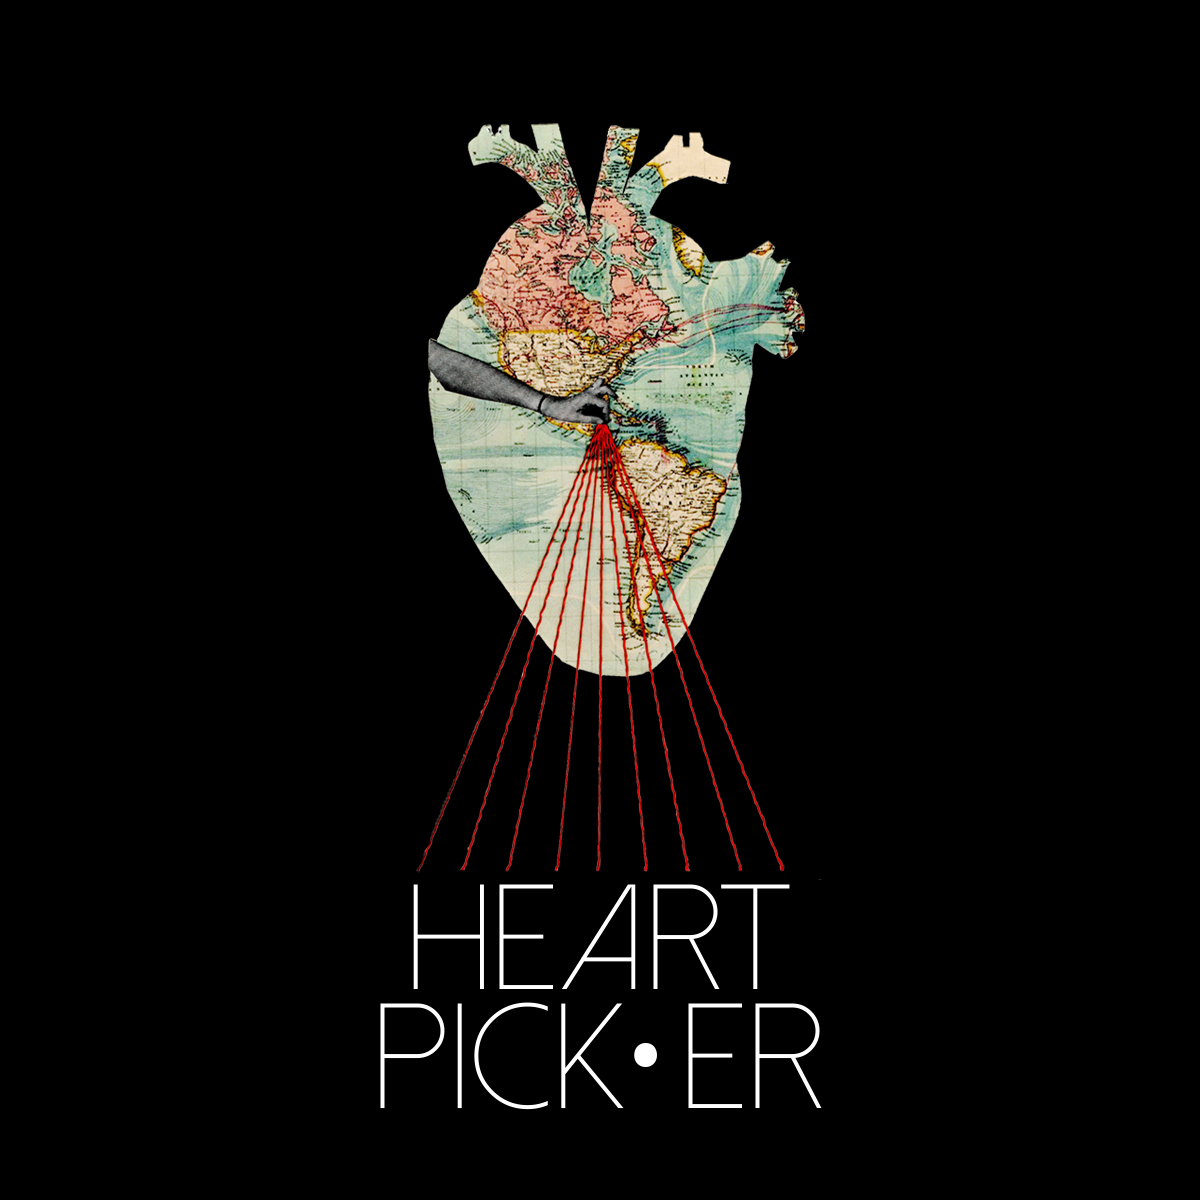 The Heart Picker